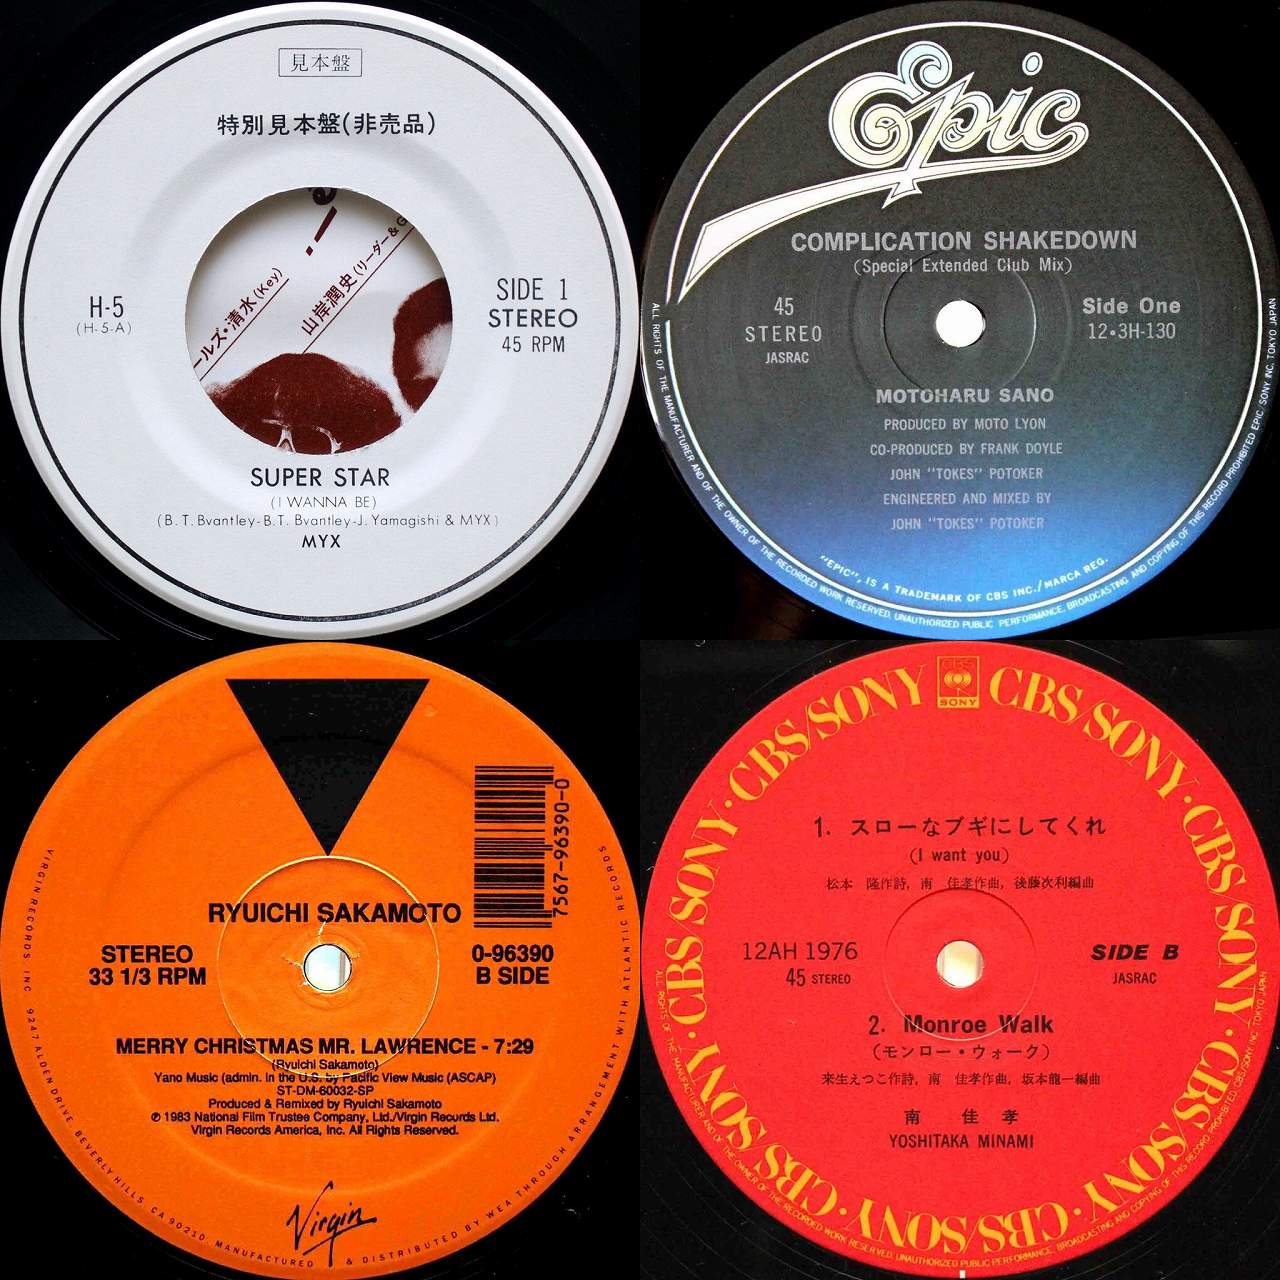 CHAR / U.S.J (1980) - Disco DJ AKI ブログ